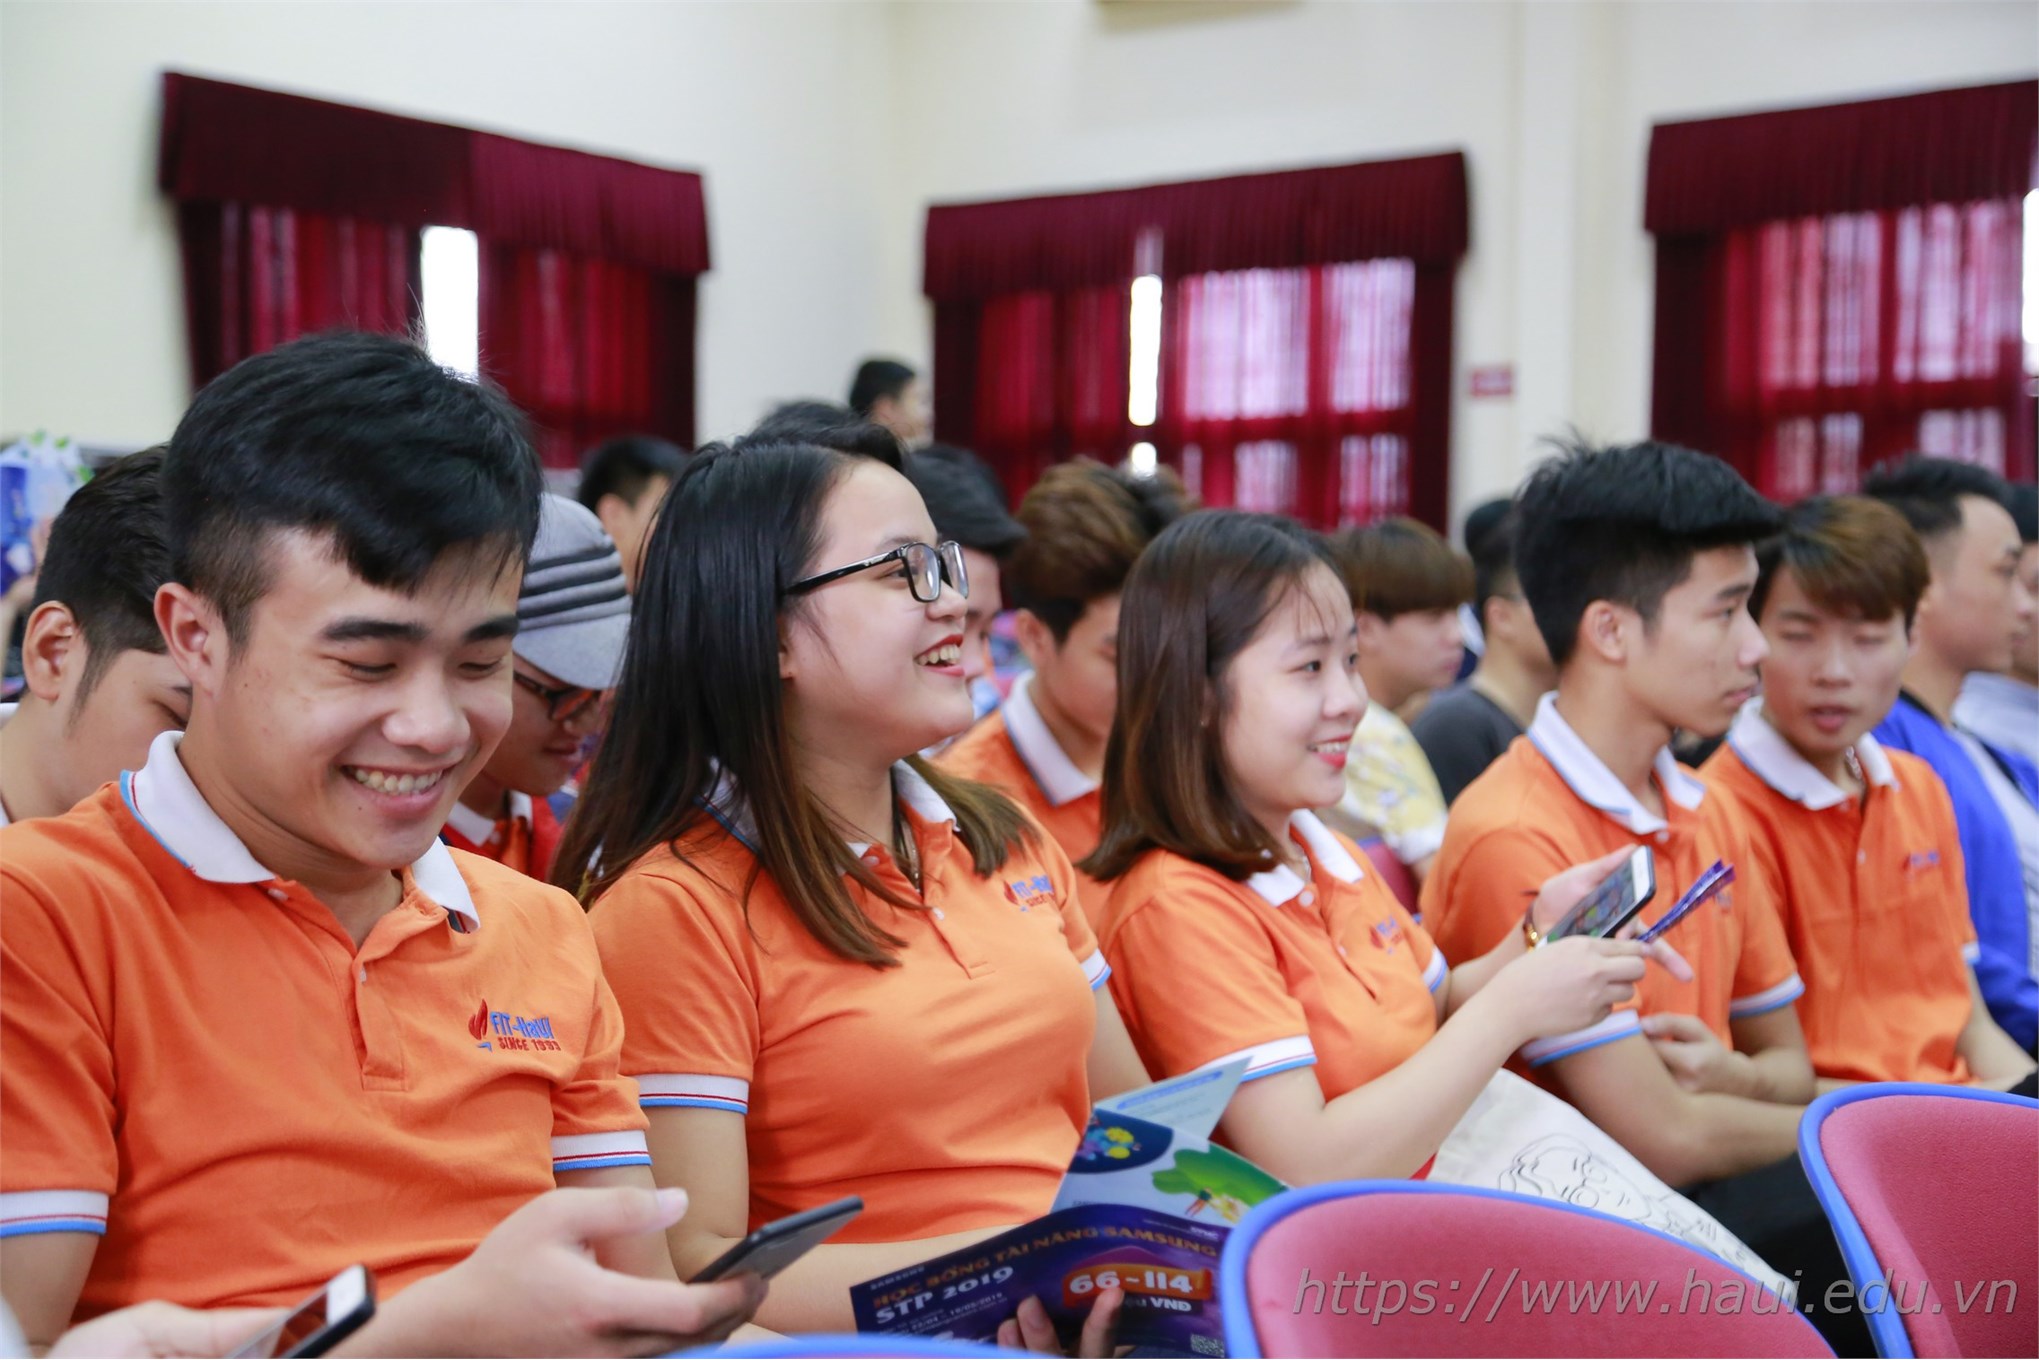 Hàng trăm cơ hội việc làm, chương trình học bổng toàn phần cho sinh viên Đại học Công nghiệp Hà Nội